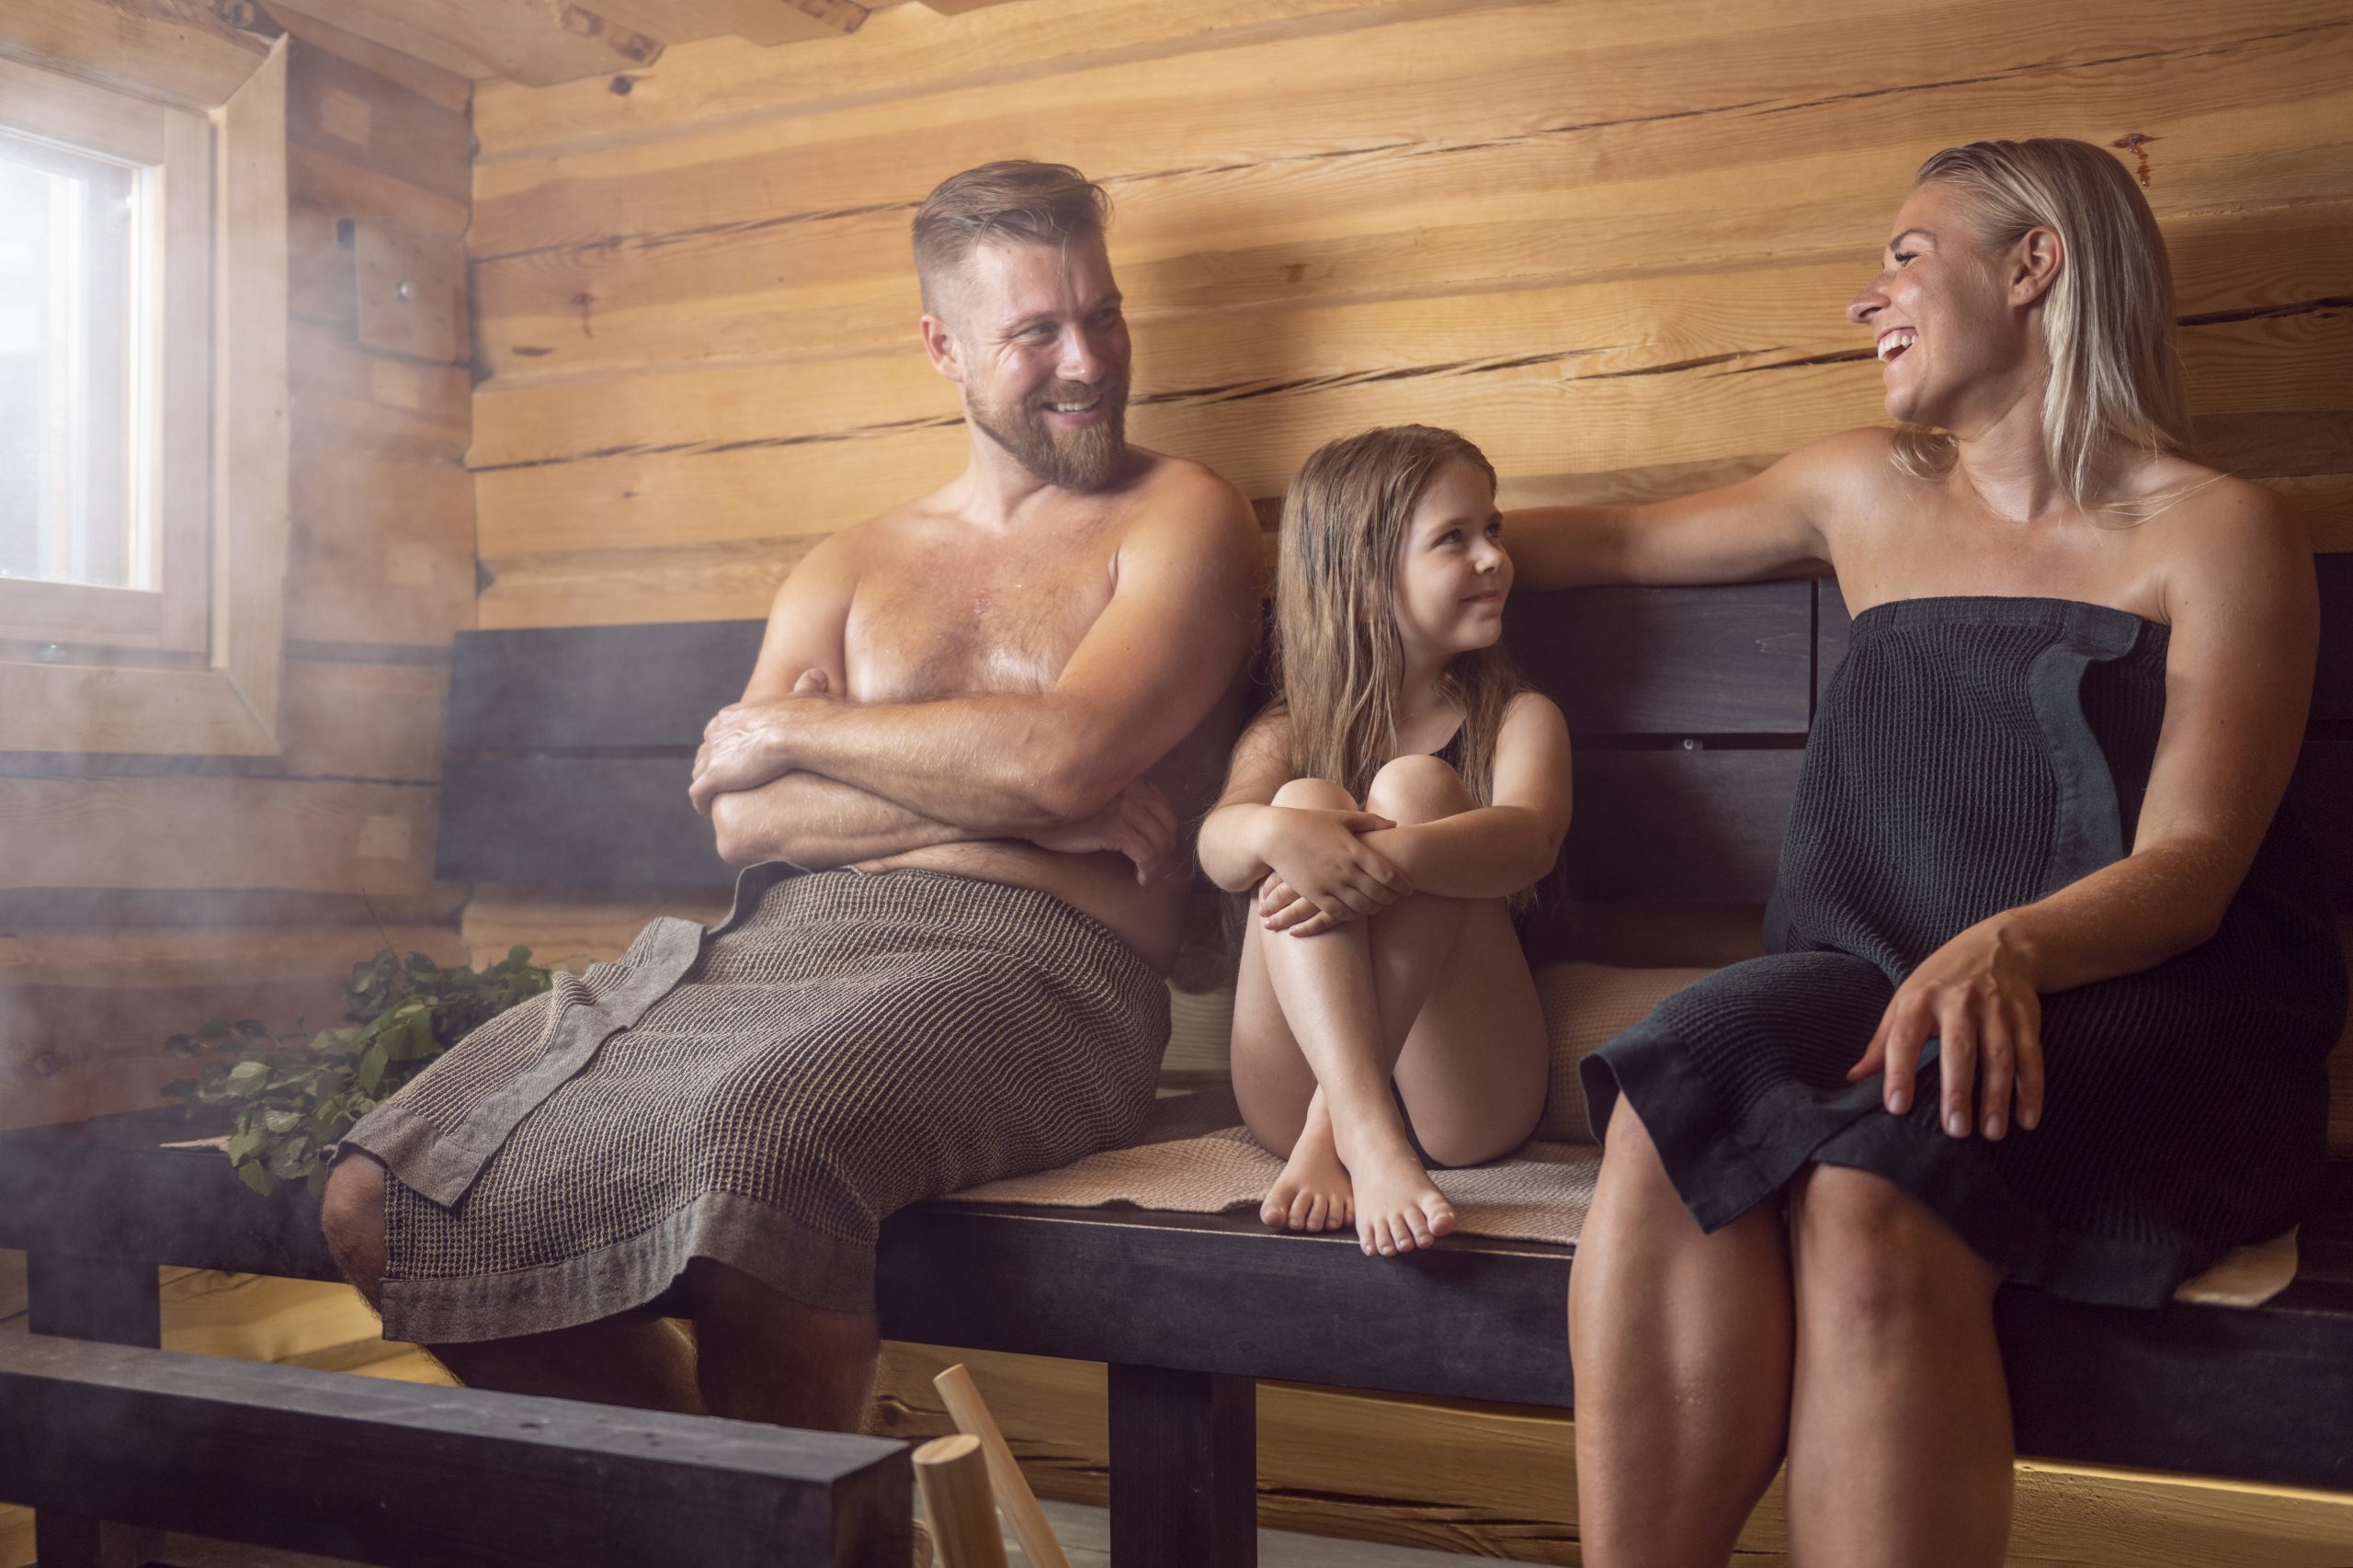 Perhe saunoo mökkisaunassa. A Family barthin in summer cottage sauna.